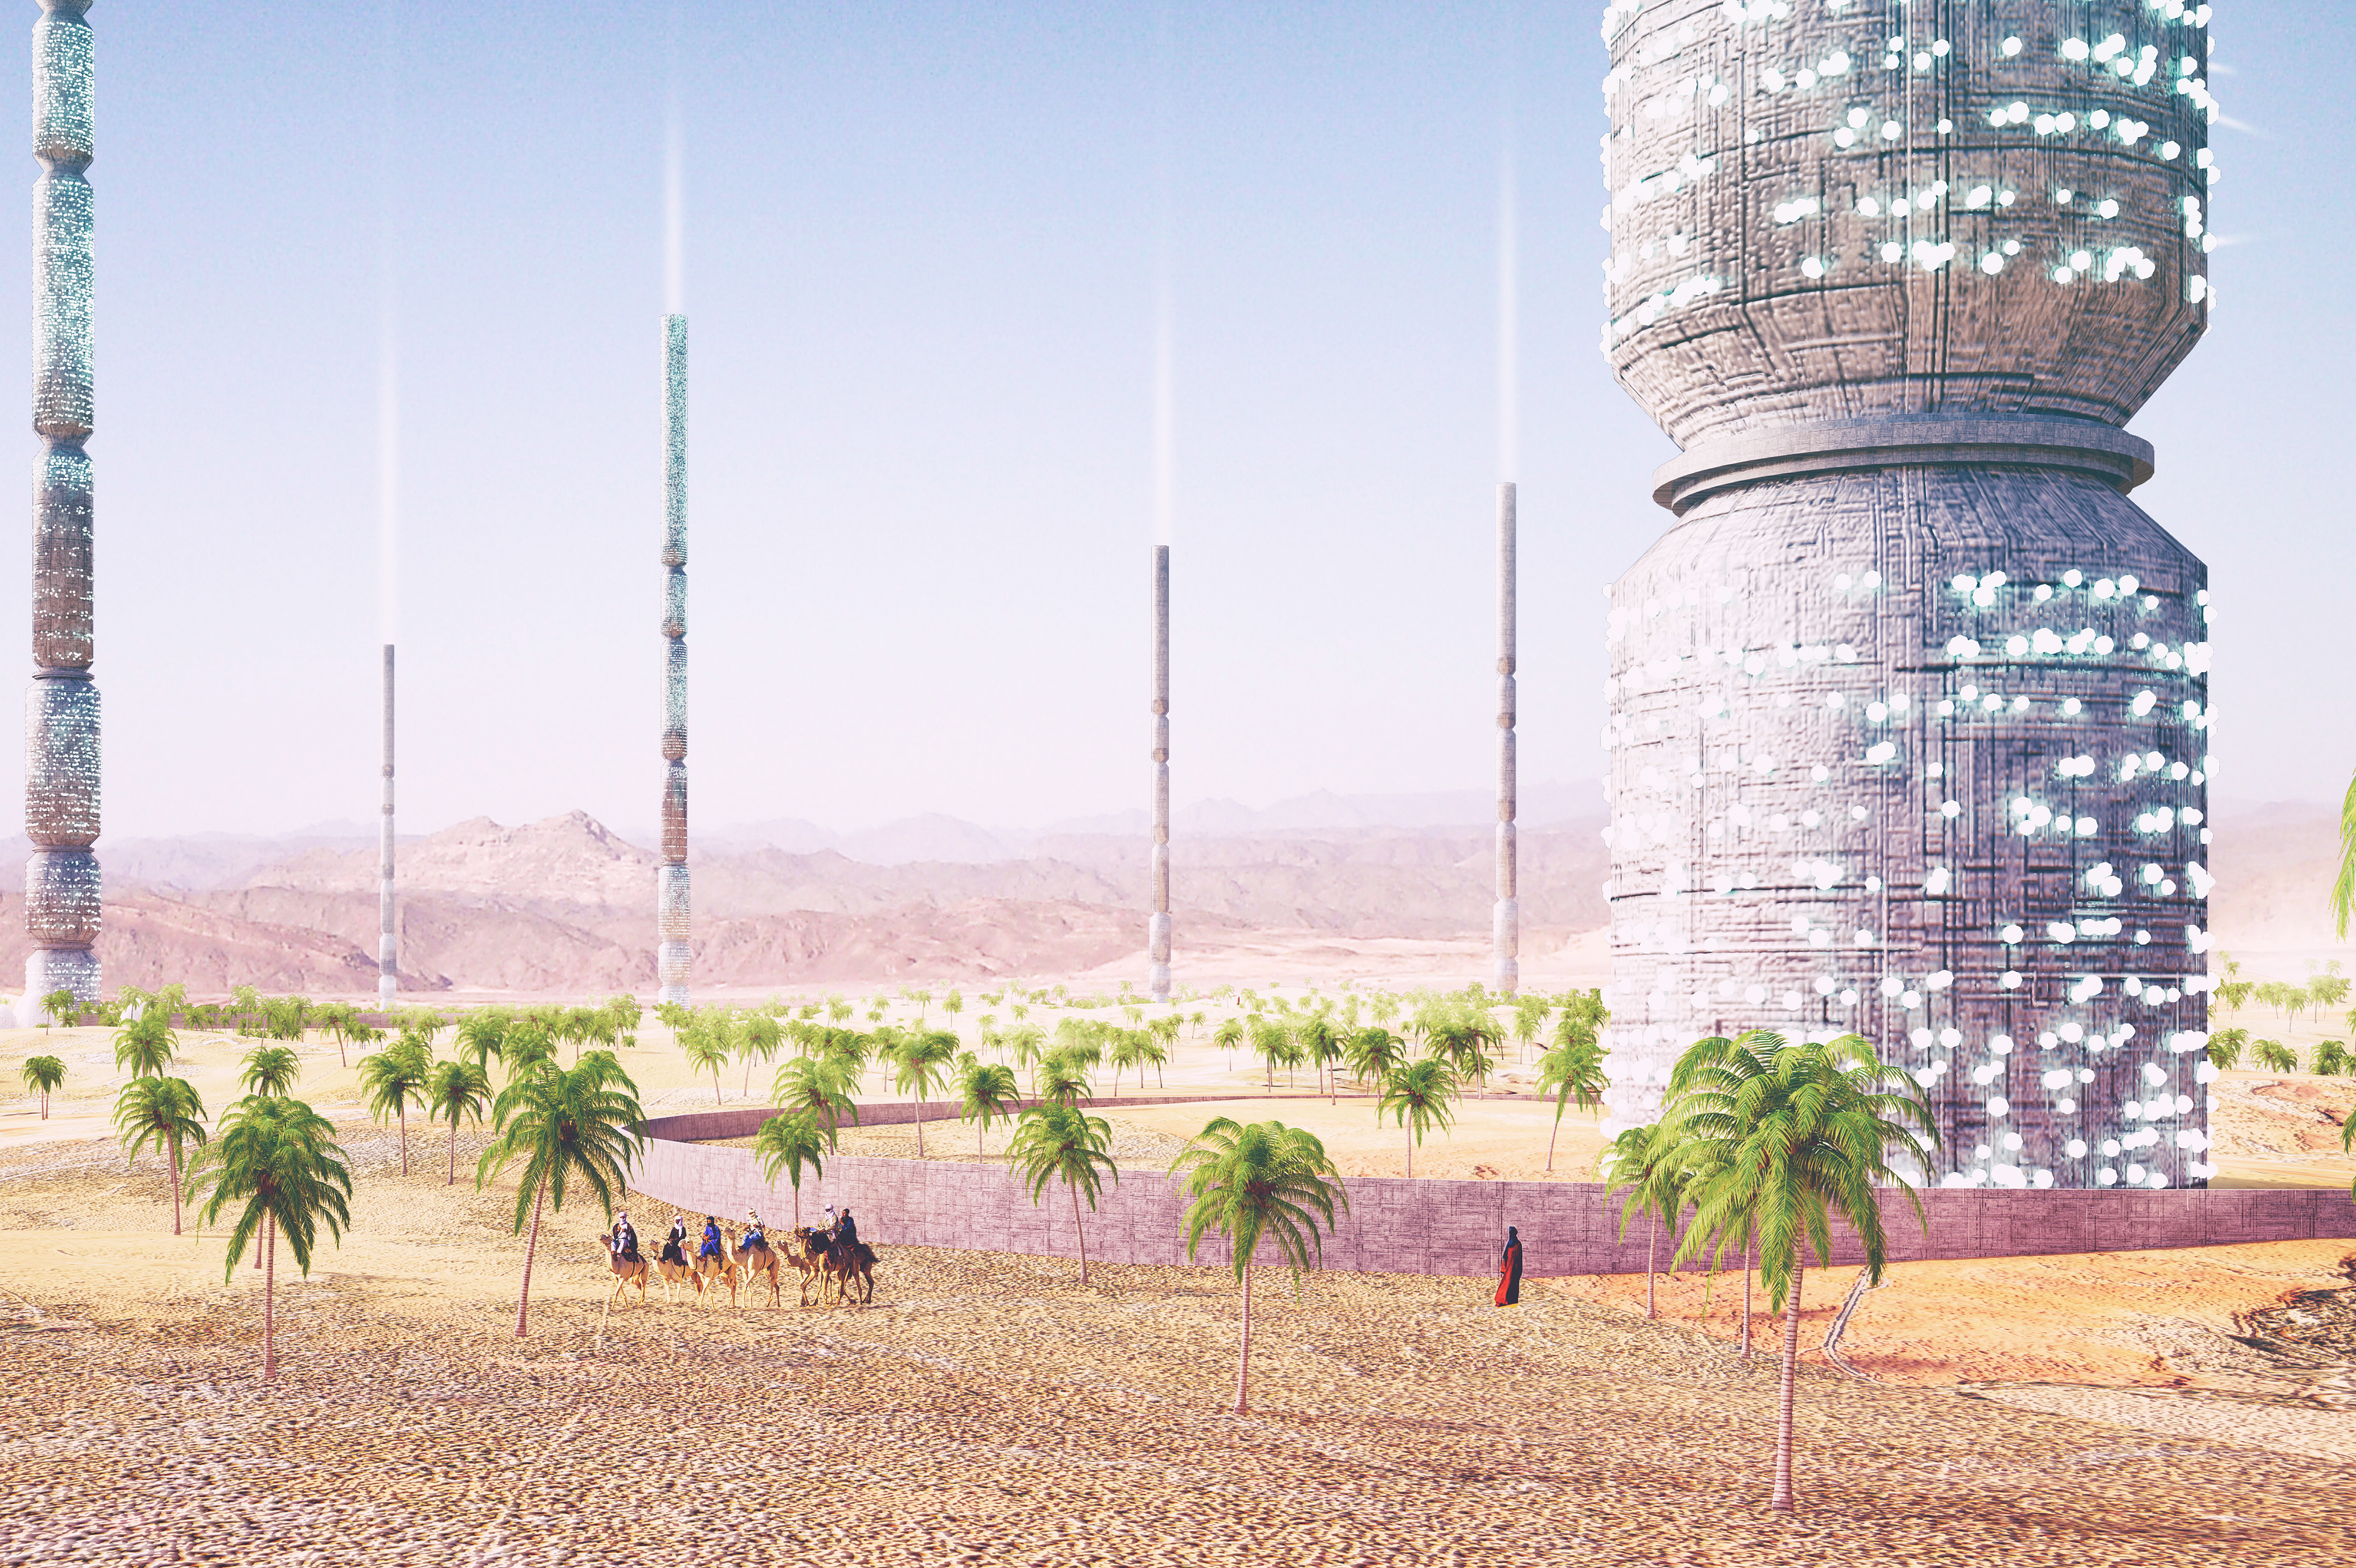 Situado al norte de Tinduf, Argelia, el proyecto Valley of the Giants consiste en una serie de torres que albergar&iacute;an plantas de esporas que permitir&iacute;an producir, recolectar y tratar el agua, as&iacute; como polinizar el paisaje circundante, catalizando la producci&oacute;n propia de un oasis en esa regi&oacute;n